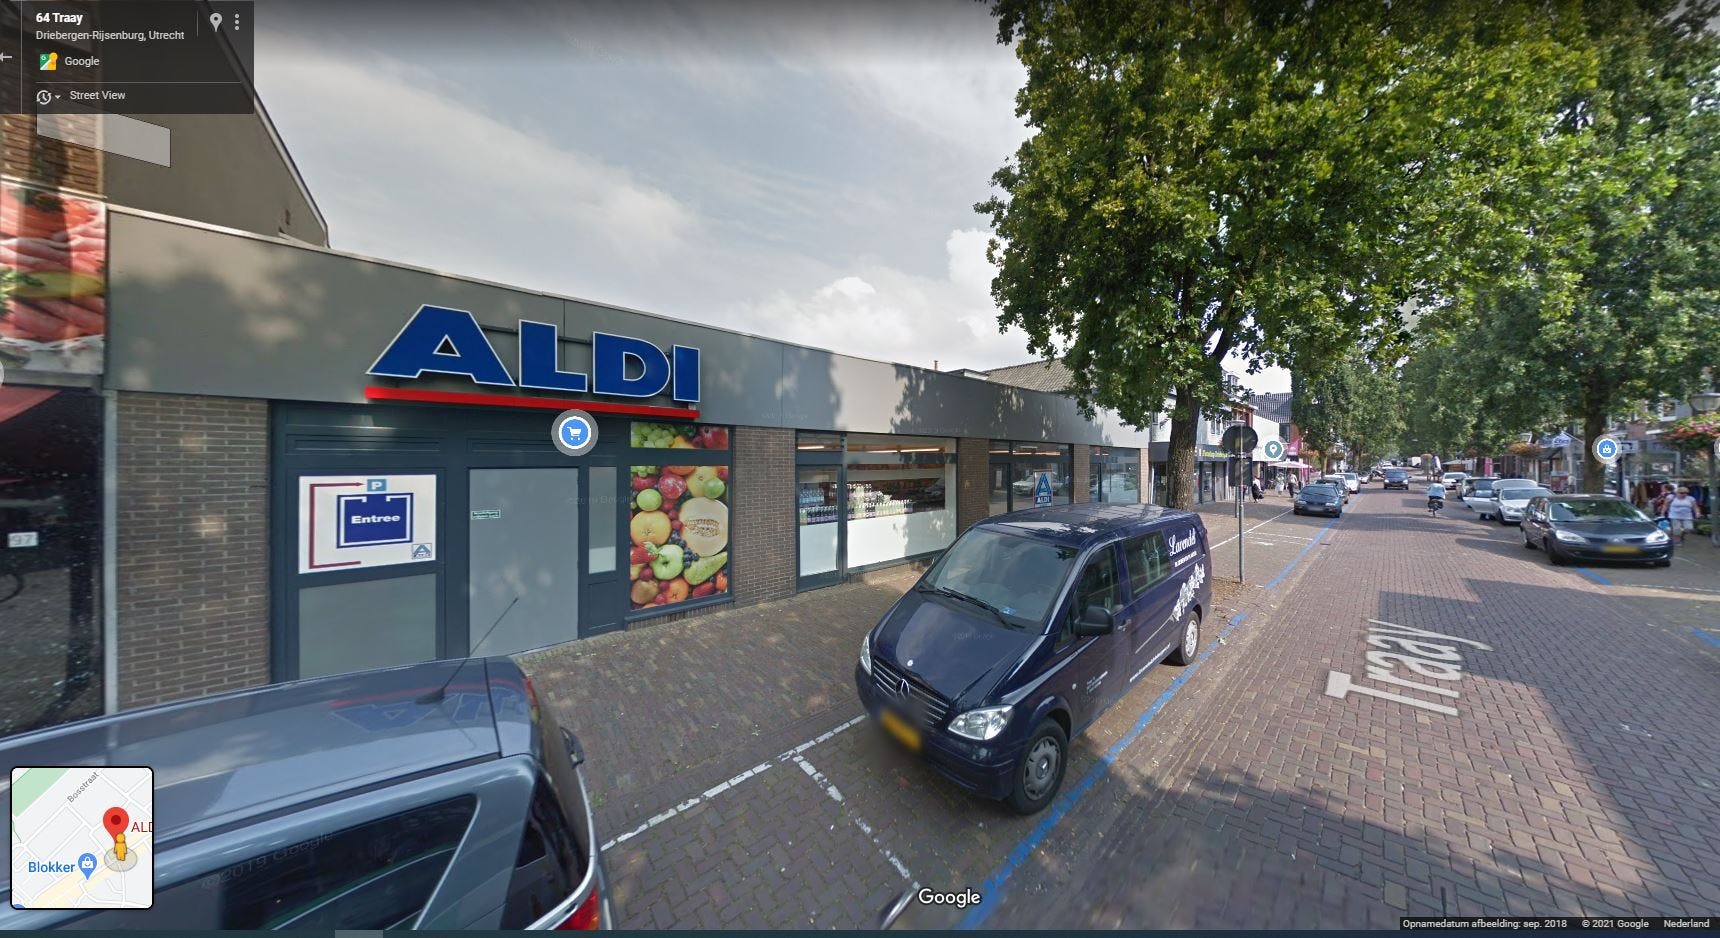 De huidige Aldi aan de Traaij in Driebergen. Foto: Google Streetview.